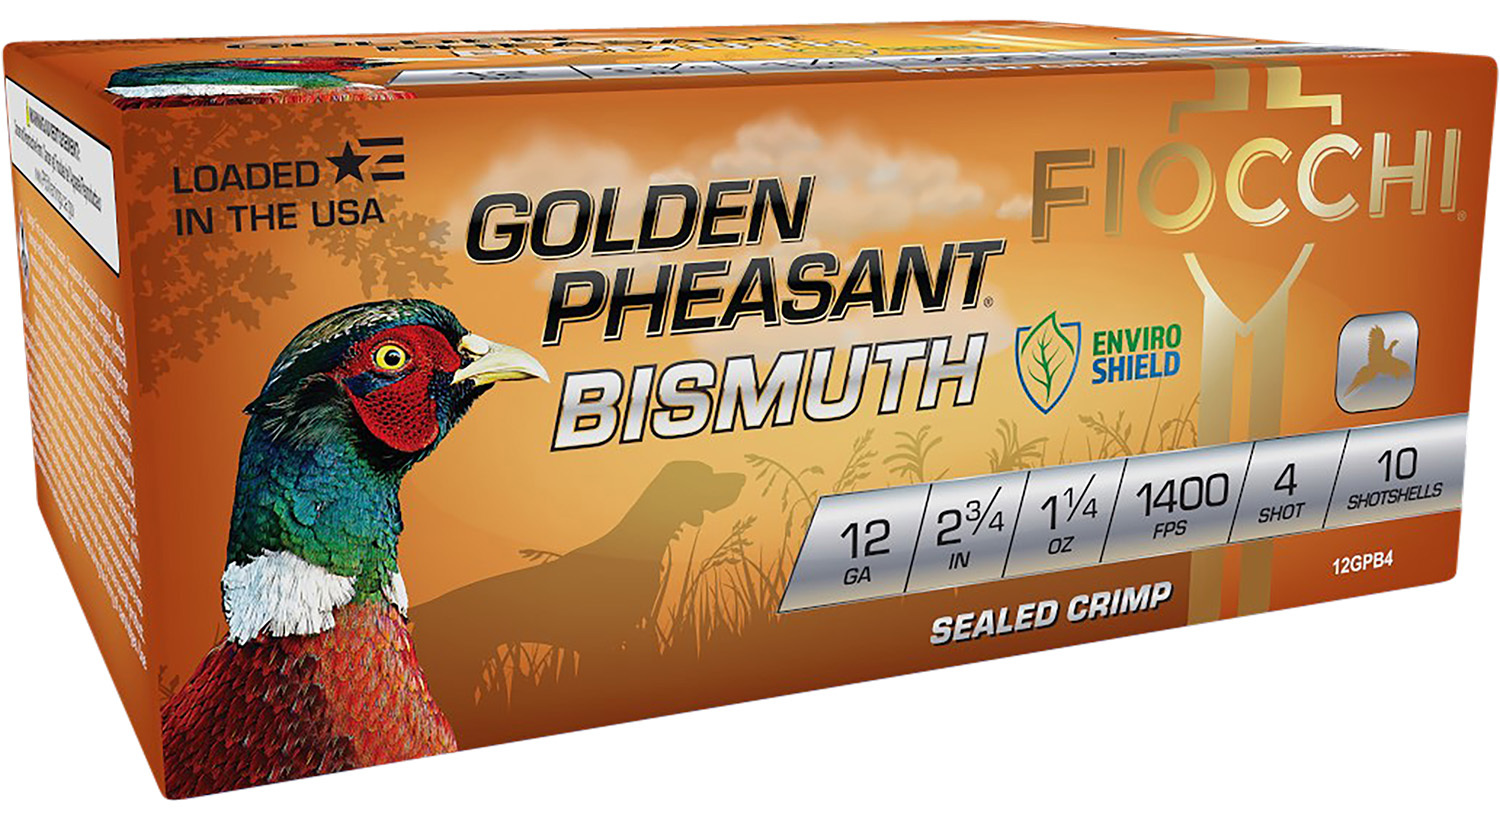 Fiocchi 12GPB4 Golden Pheasant Bismuth 12 Gauge 2.75